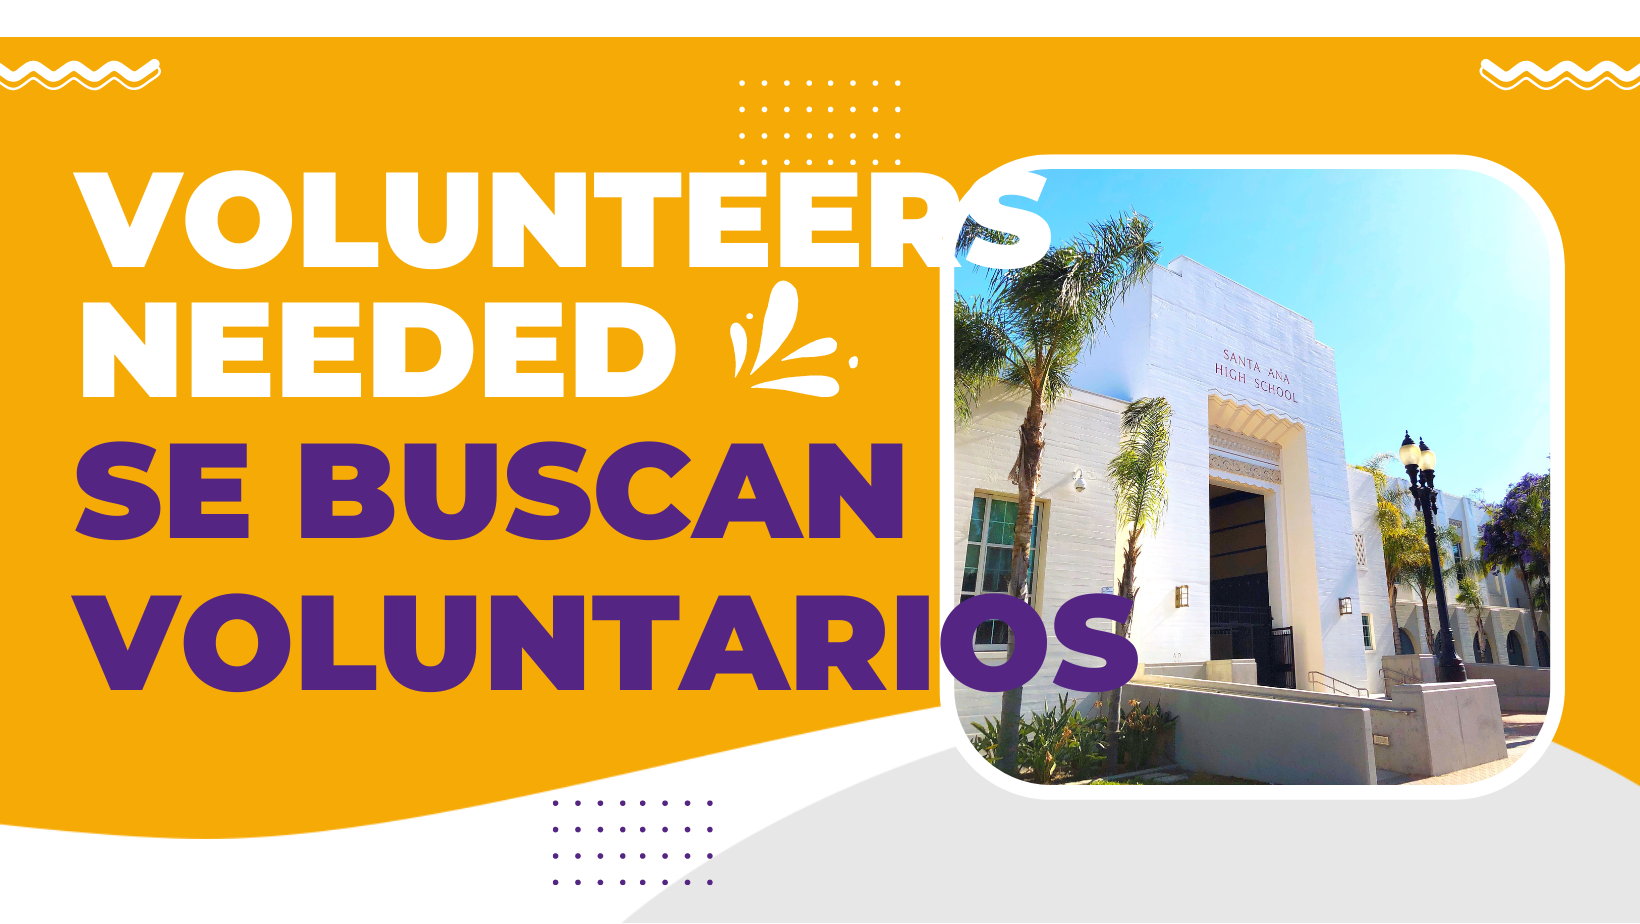 Volunteers wanted - se buscan voluntarios